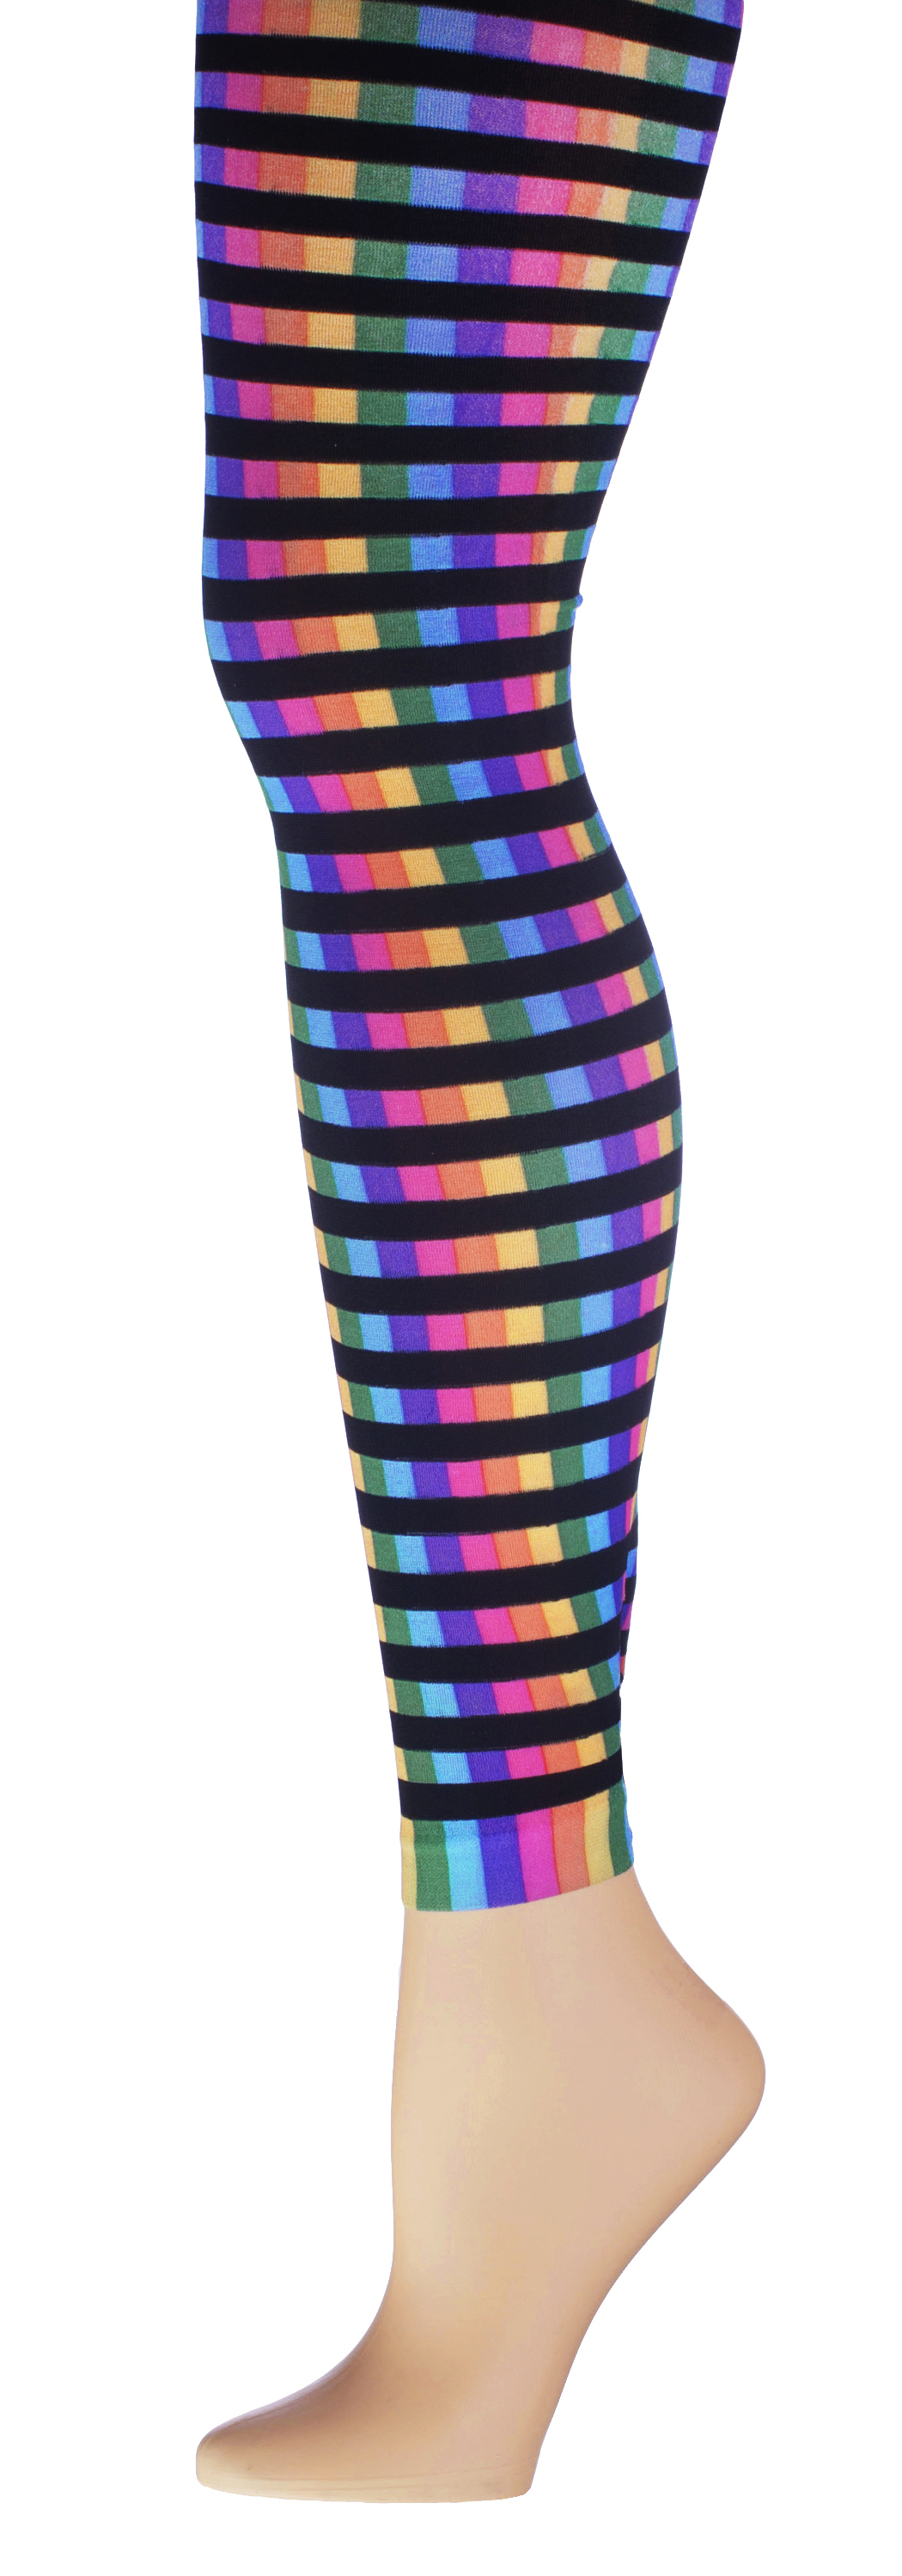 Women's Fashion LEGGINGS - Striped Neon Print